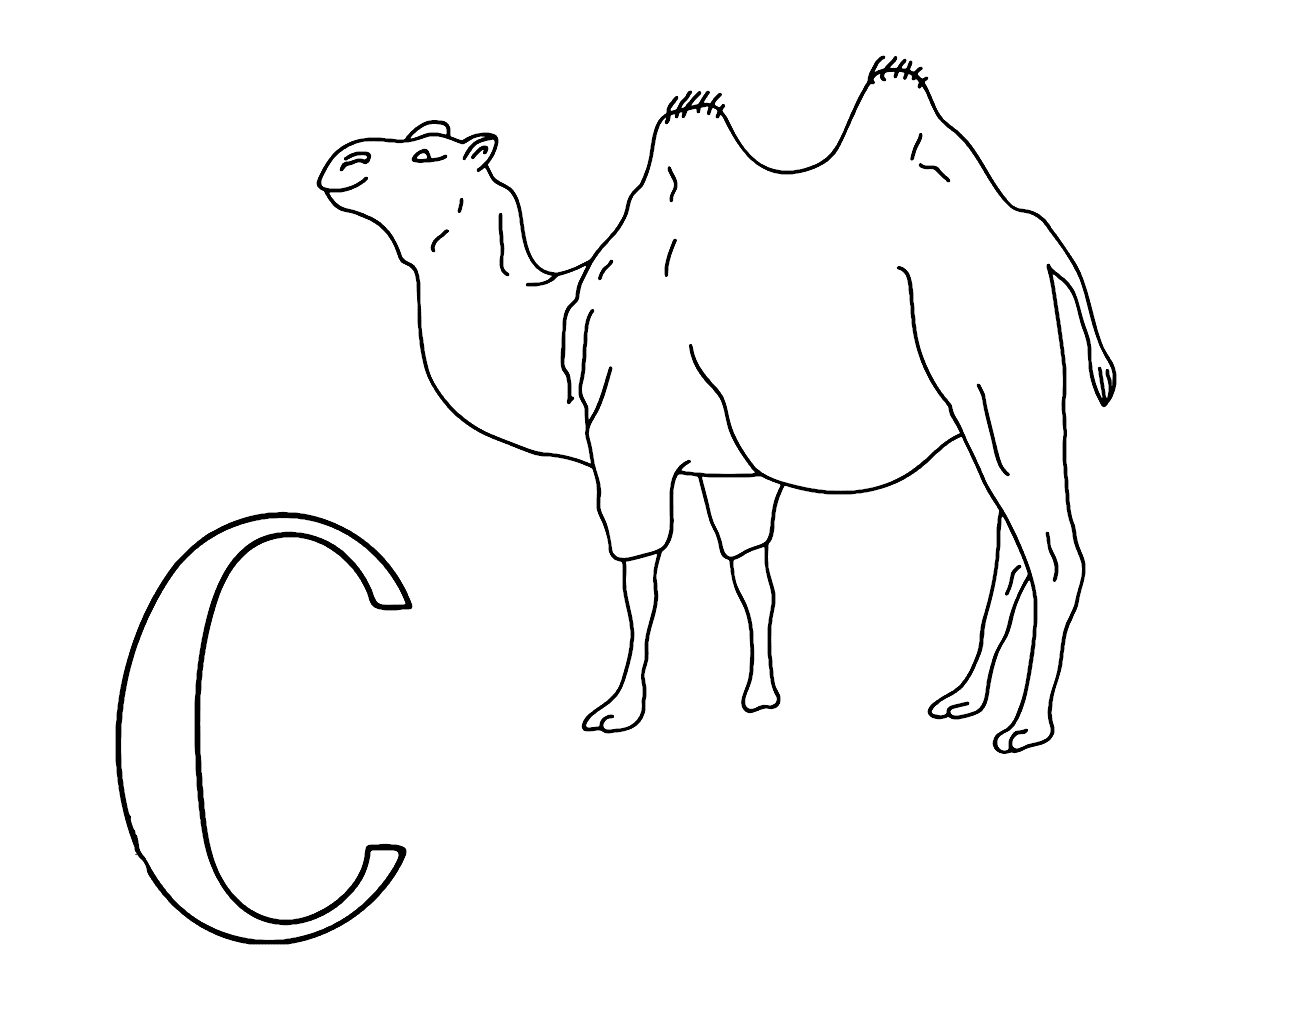 Buchstabe C für Camel von Camel